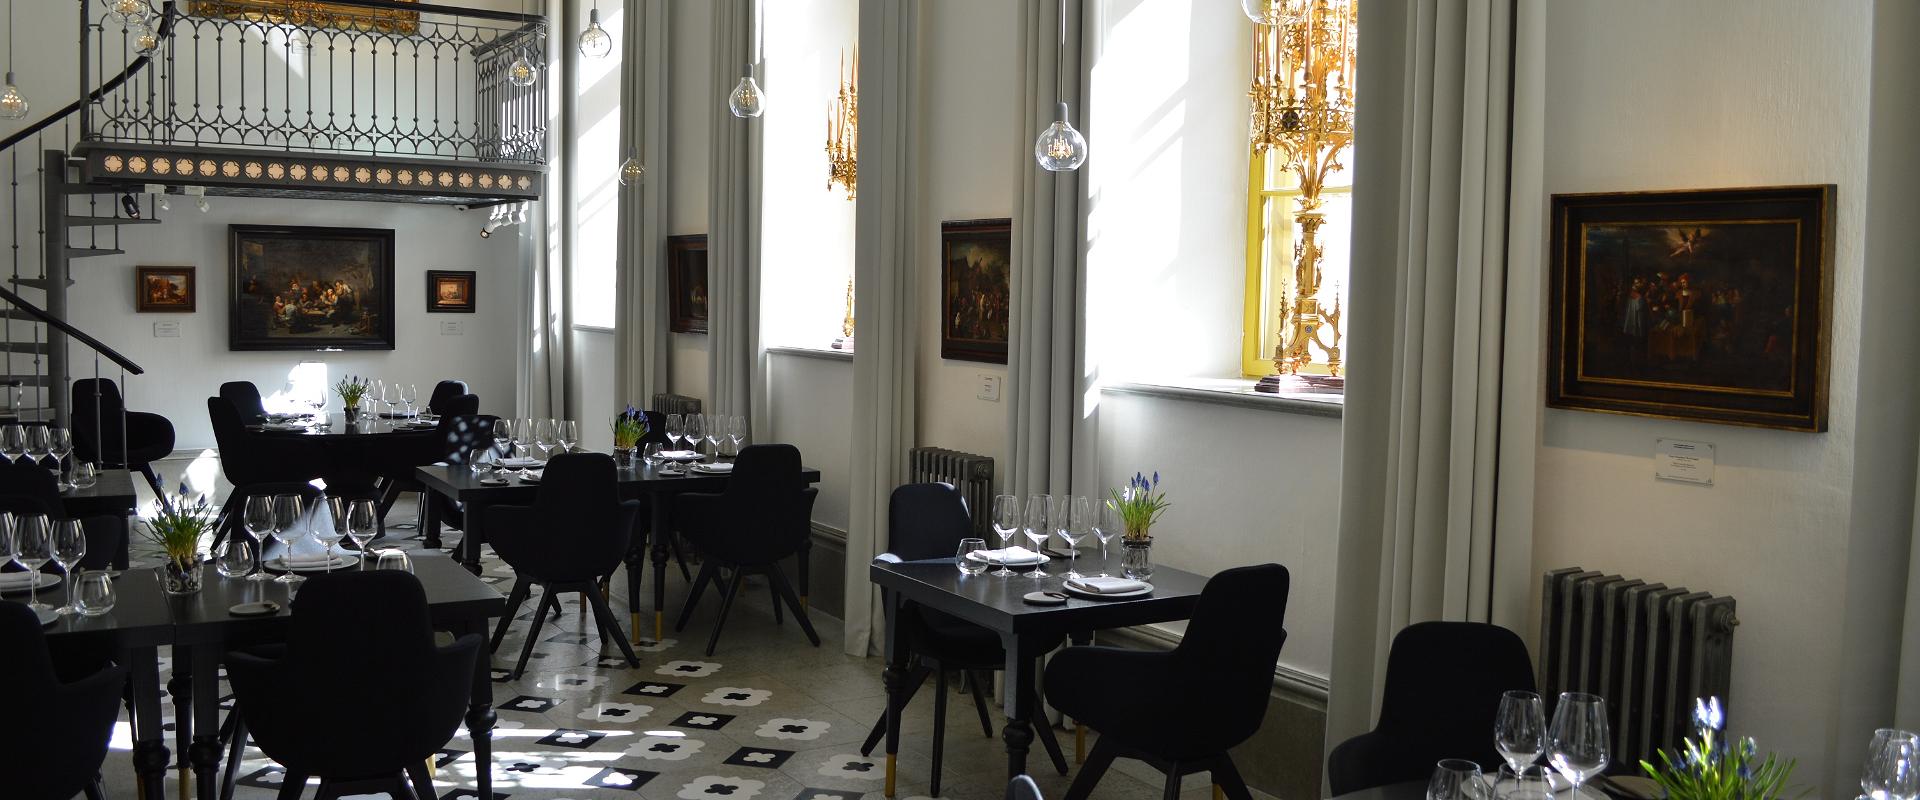 Das Restaurant Art Priori – das ist hochwertige Kunst an den Wänden und auf dem Teller. Weiche, kreative und würdige Geschmackserlebnisse bieten Ihnen